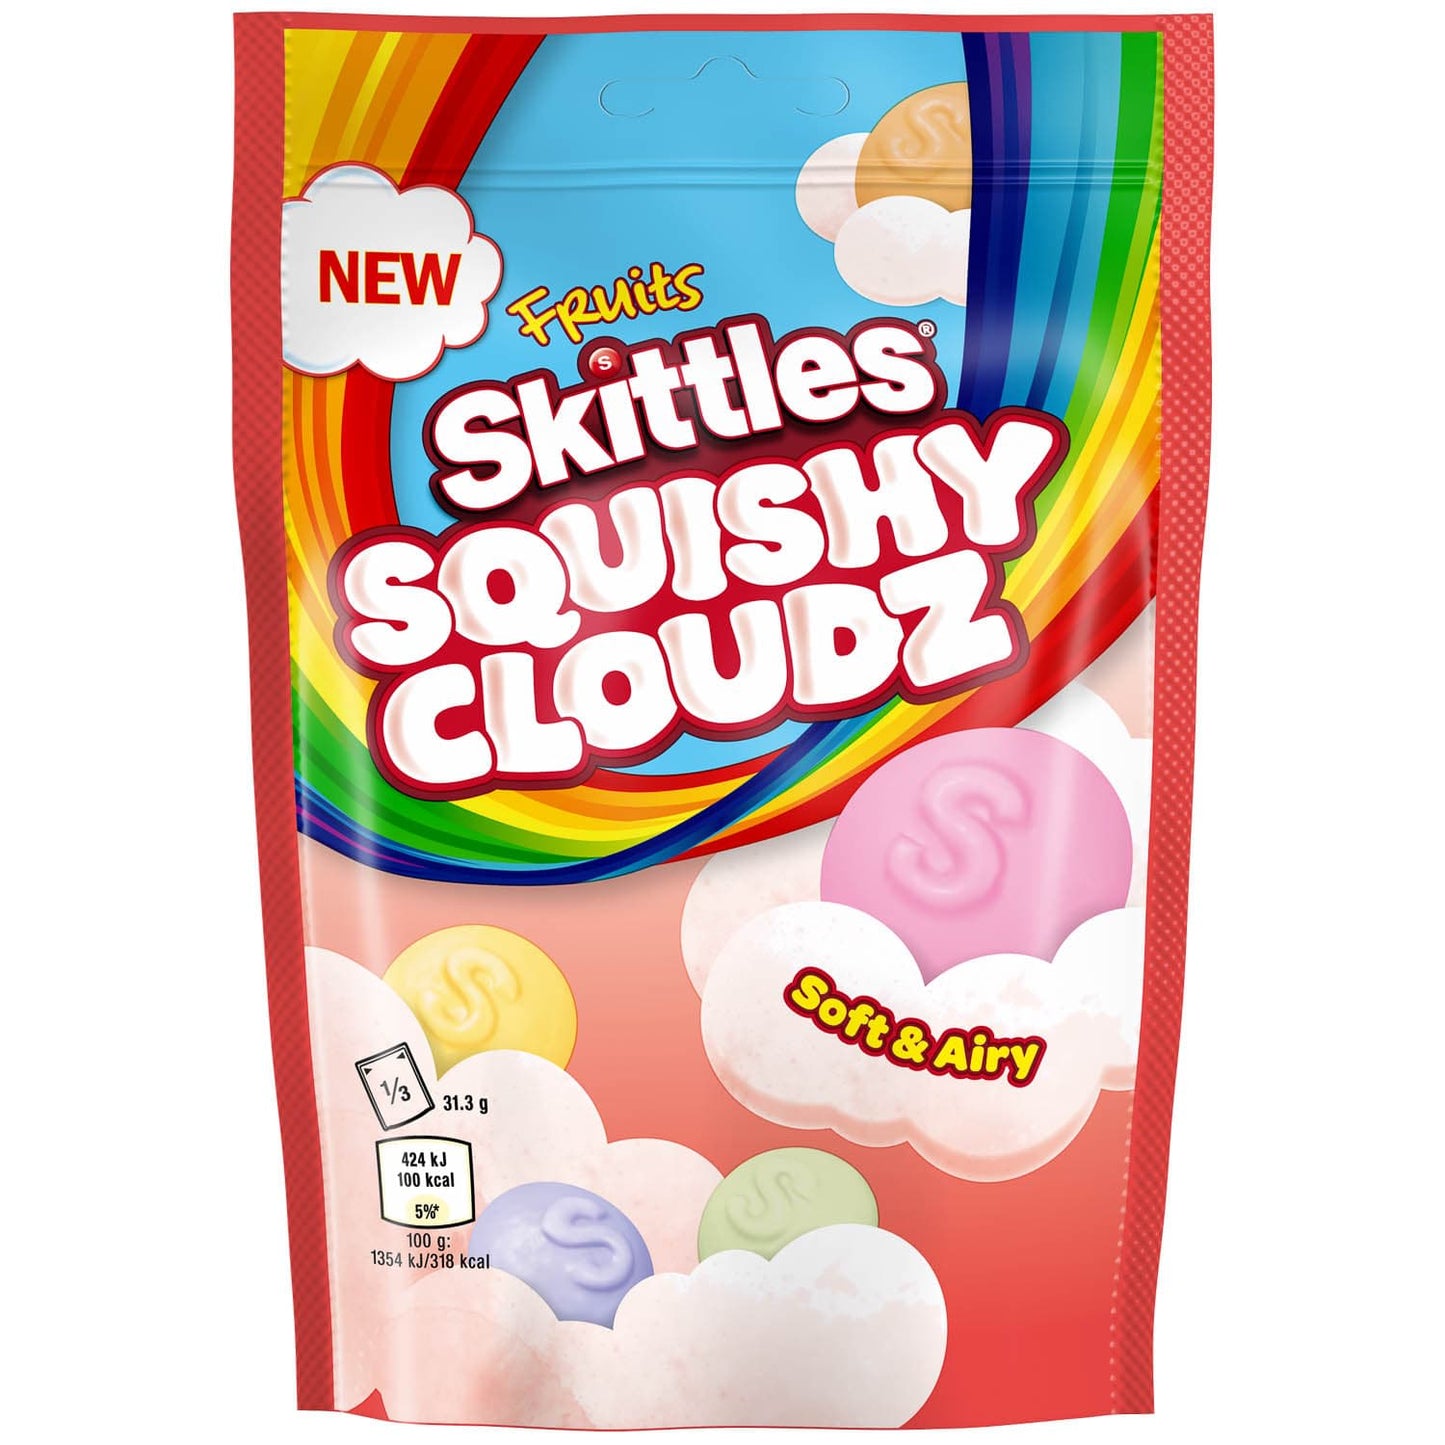 Skittles - Squishy Cloudz Soft & Airy